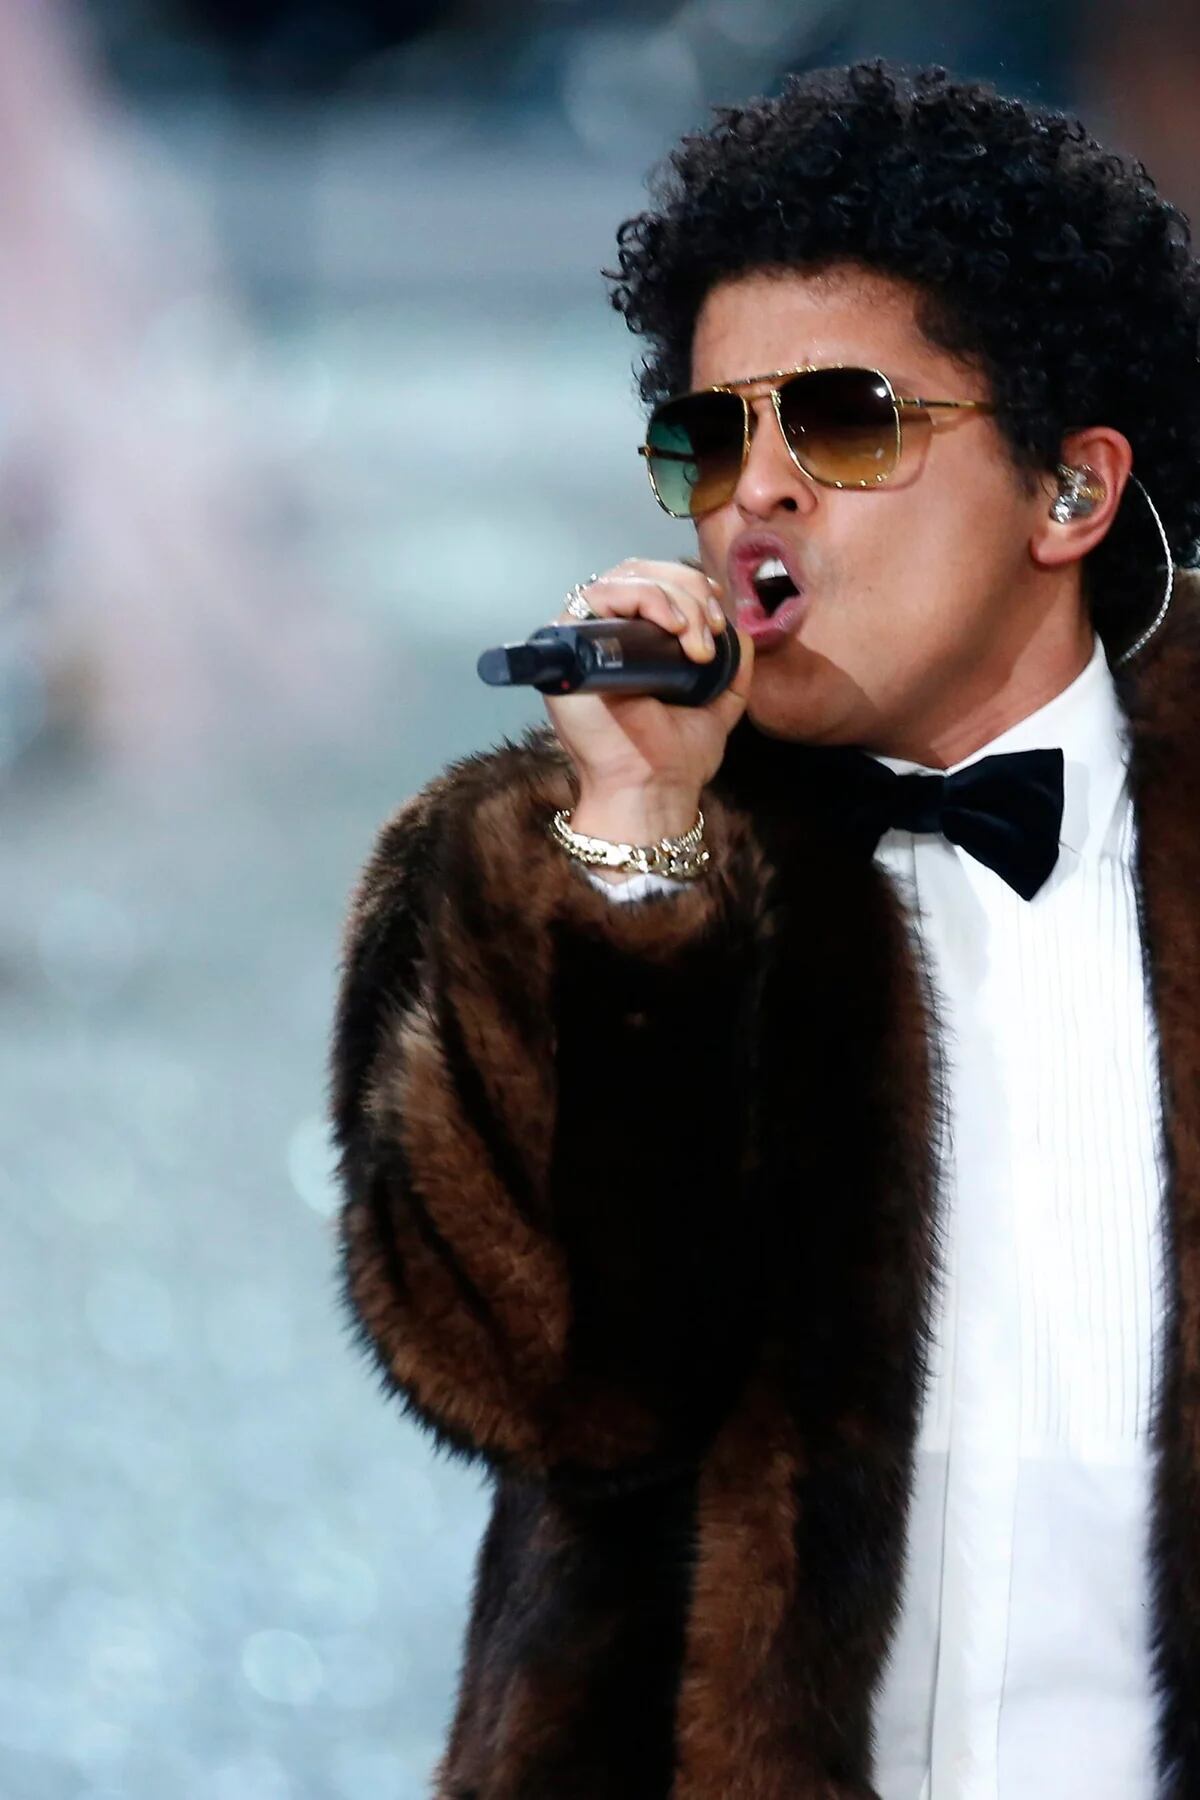 Bruno Mars retorna em grande estilo com nova banda Silk Sonic - Lab Dicas  Jornalismo